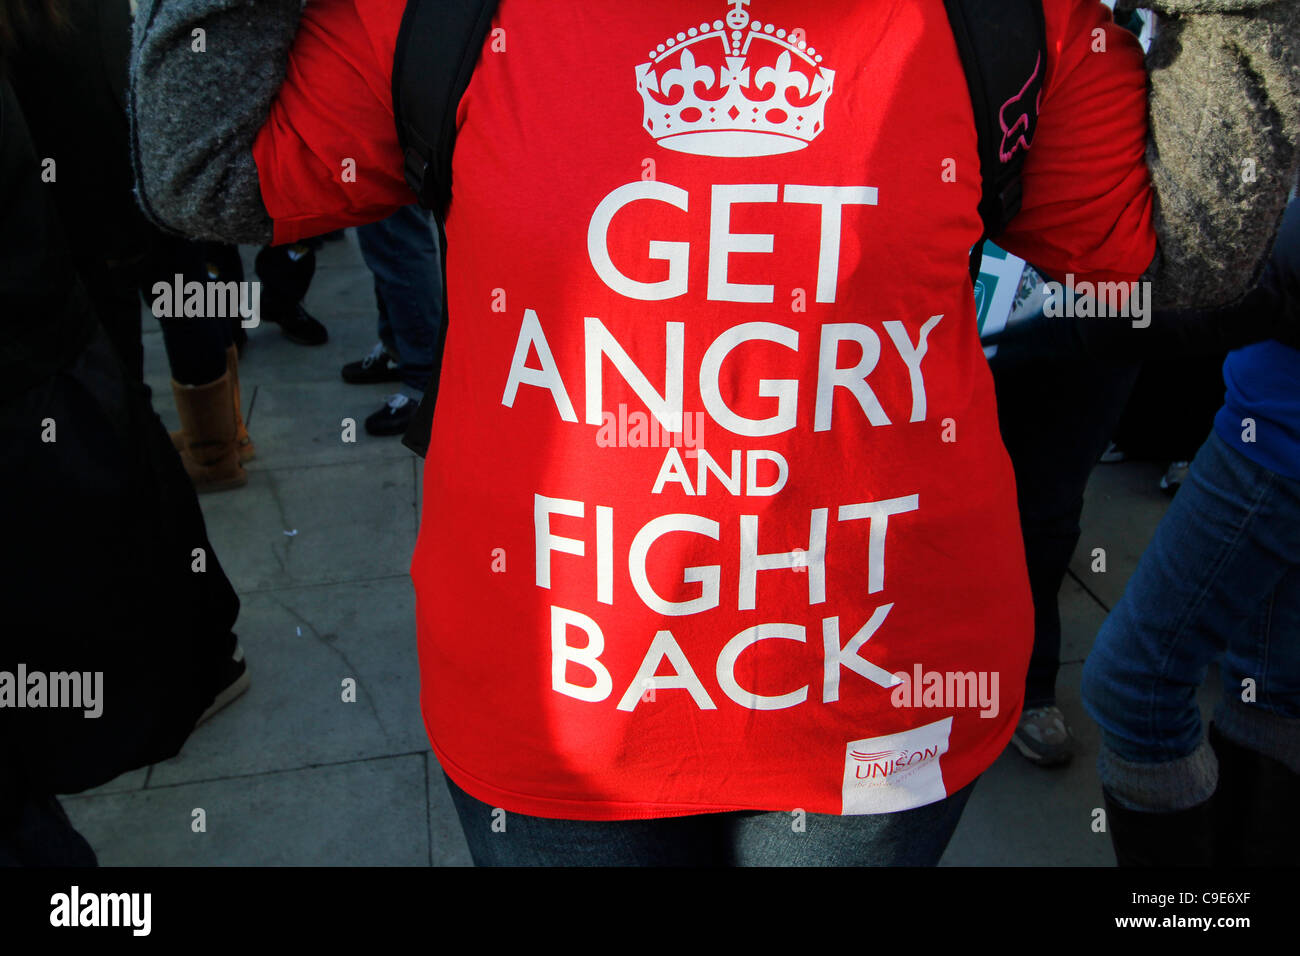 London, UK, 30.11.2011, Demonstranten in London, London wurde heute von Streiks des öffentlichen Sektors über Renten getroffen. Demonstrant tragen wütend und wehren t-shirt Stockfoto